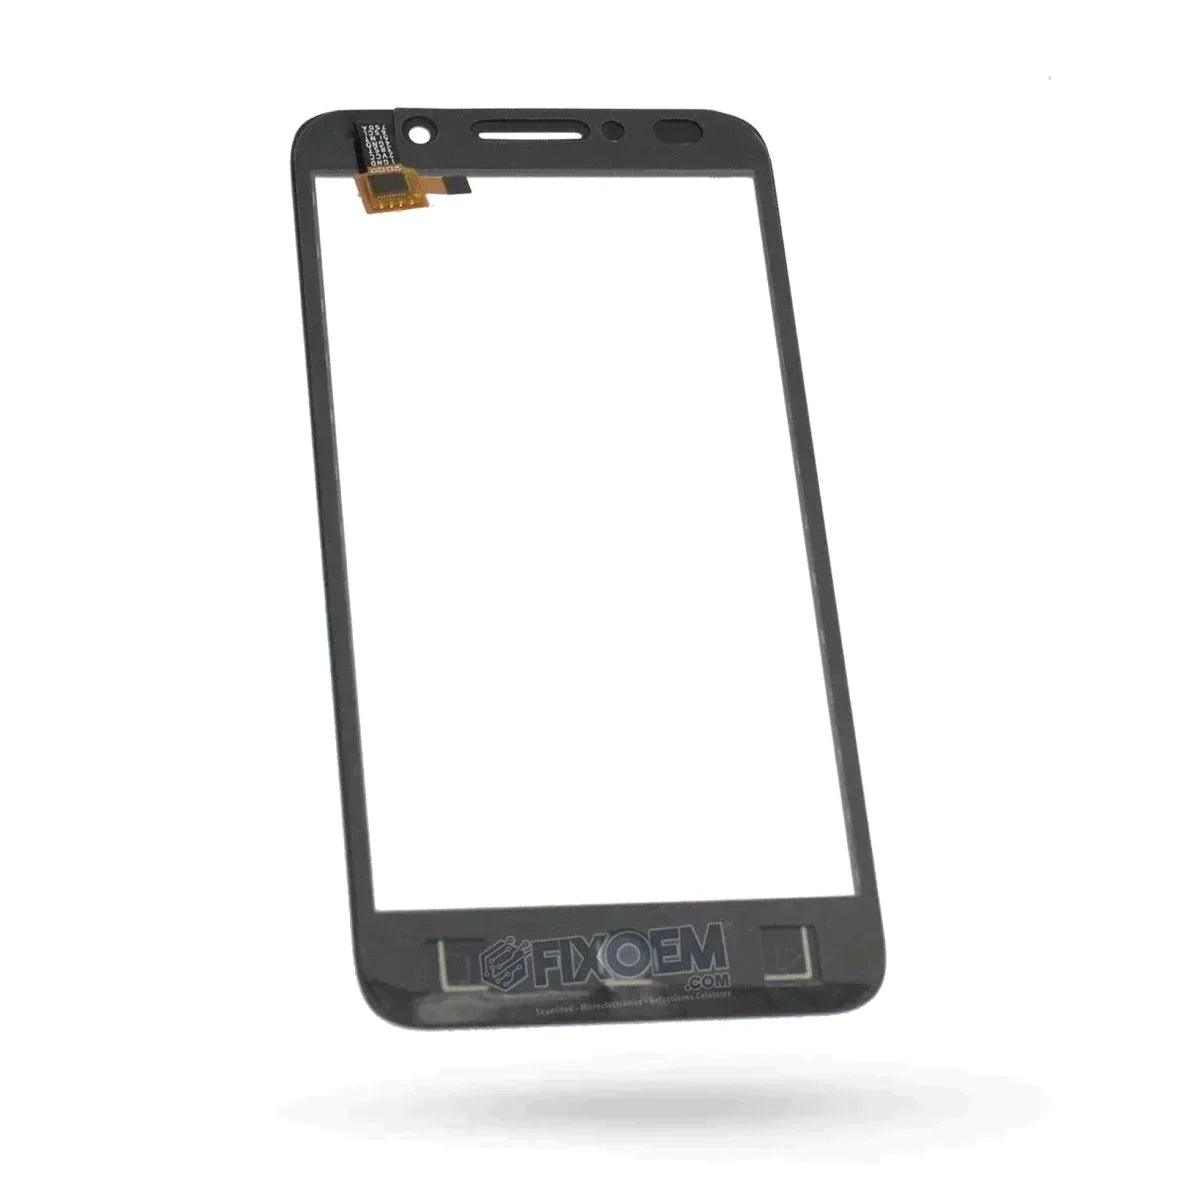 Touch Alcatel Pop 3 (5) 5015A a solo $ 90.00 Refaccion y puestos celulares, refurbish y microelectronica.- FixOEM